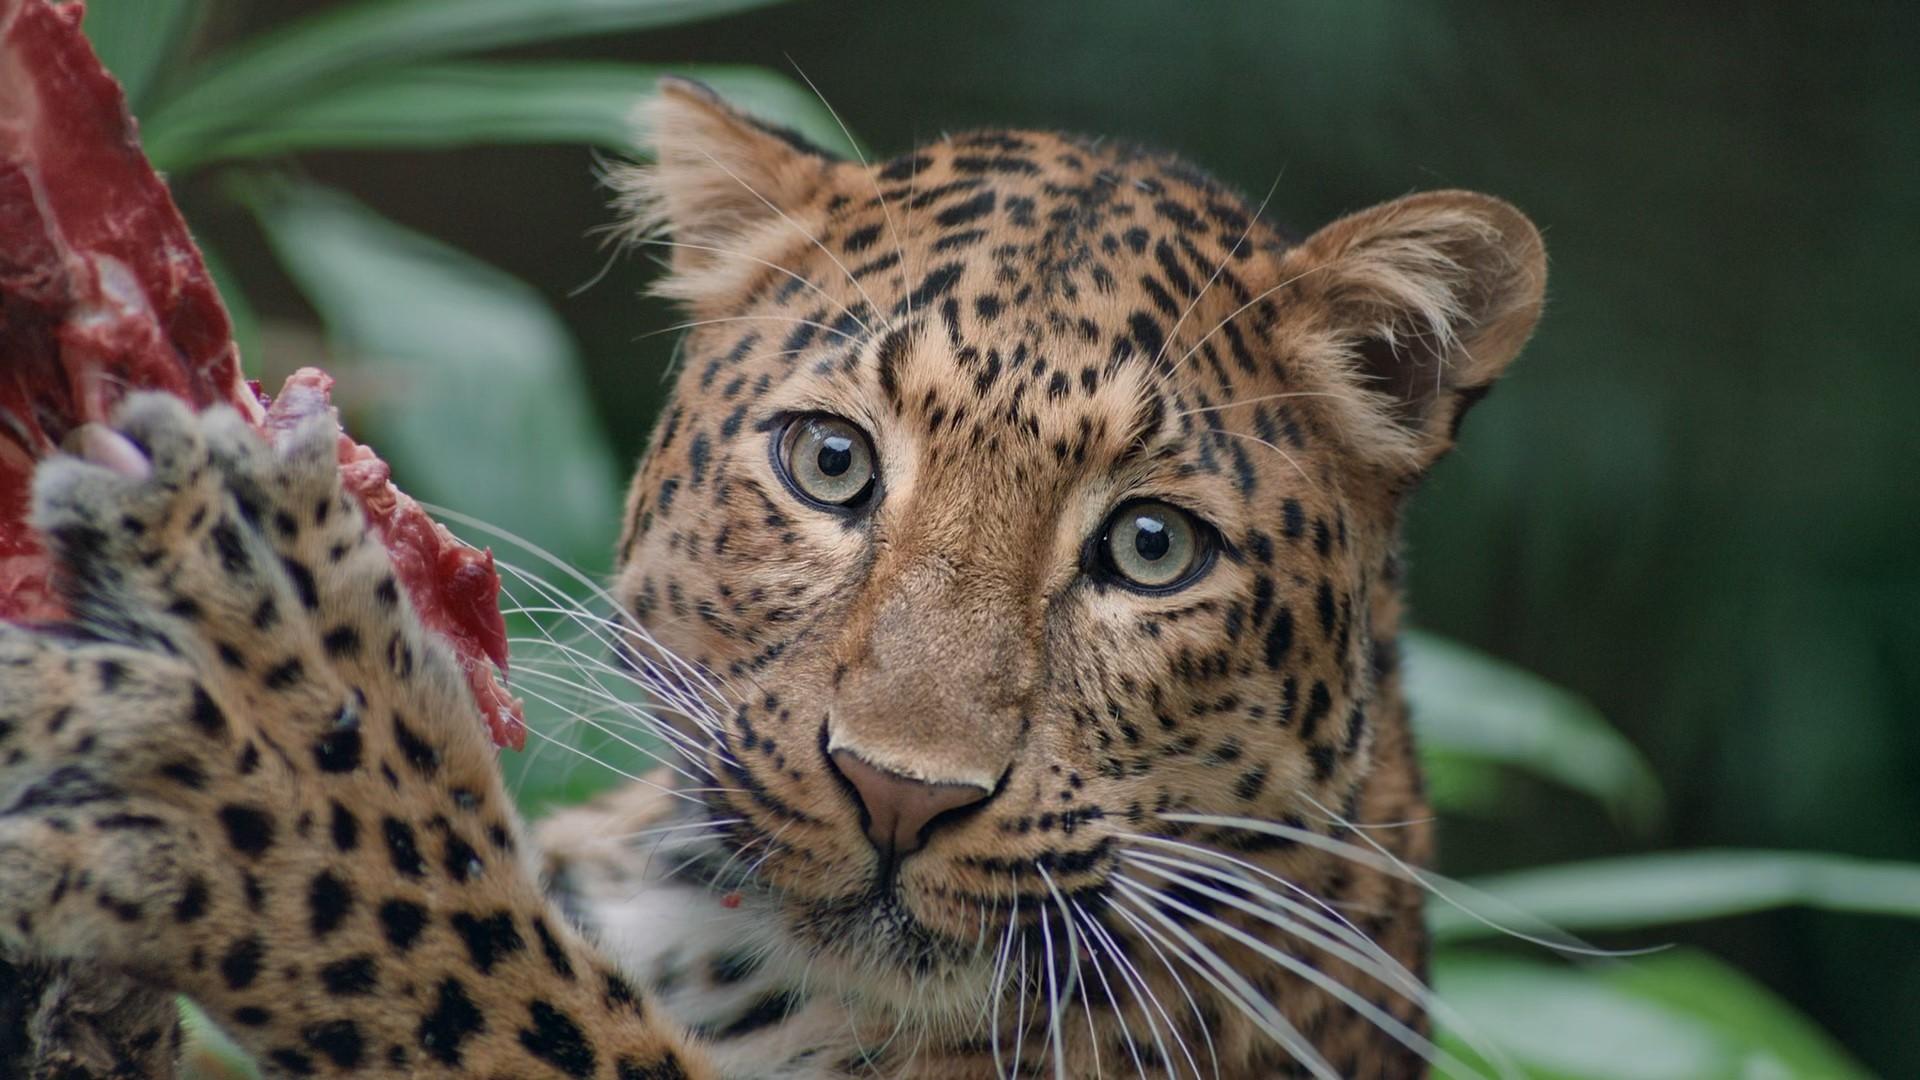 Auf Spenden angewiesen: Leopard im Erlebnis-Zoo, in der Wildnis bedroht